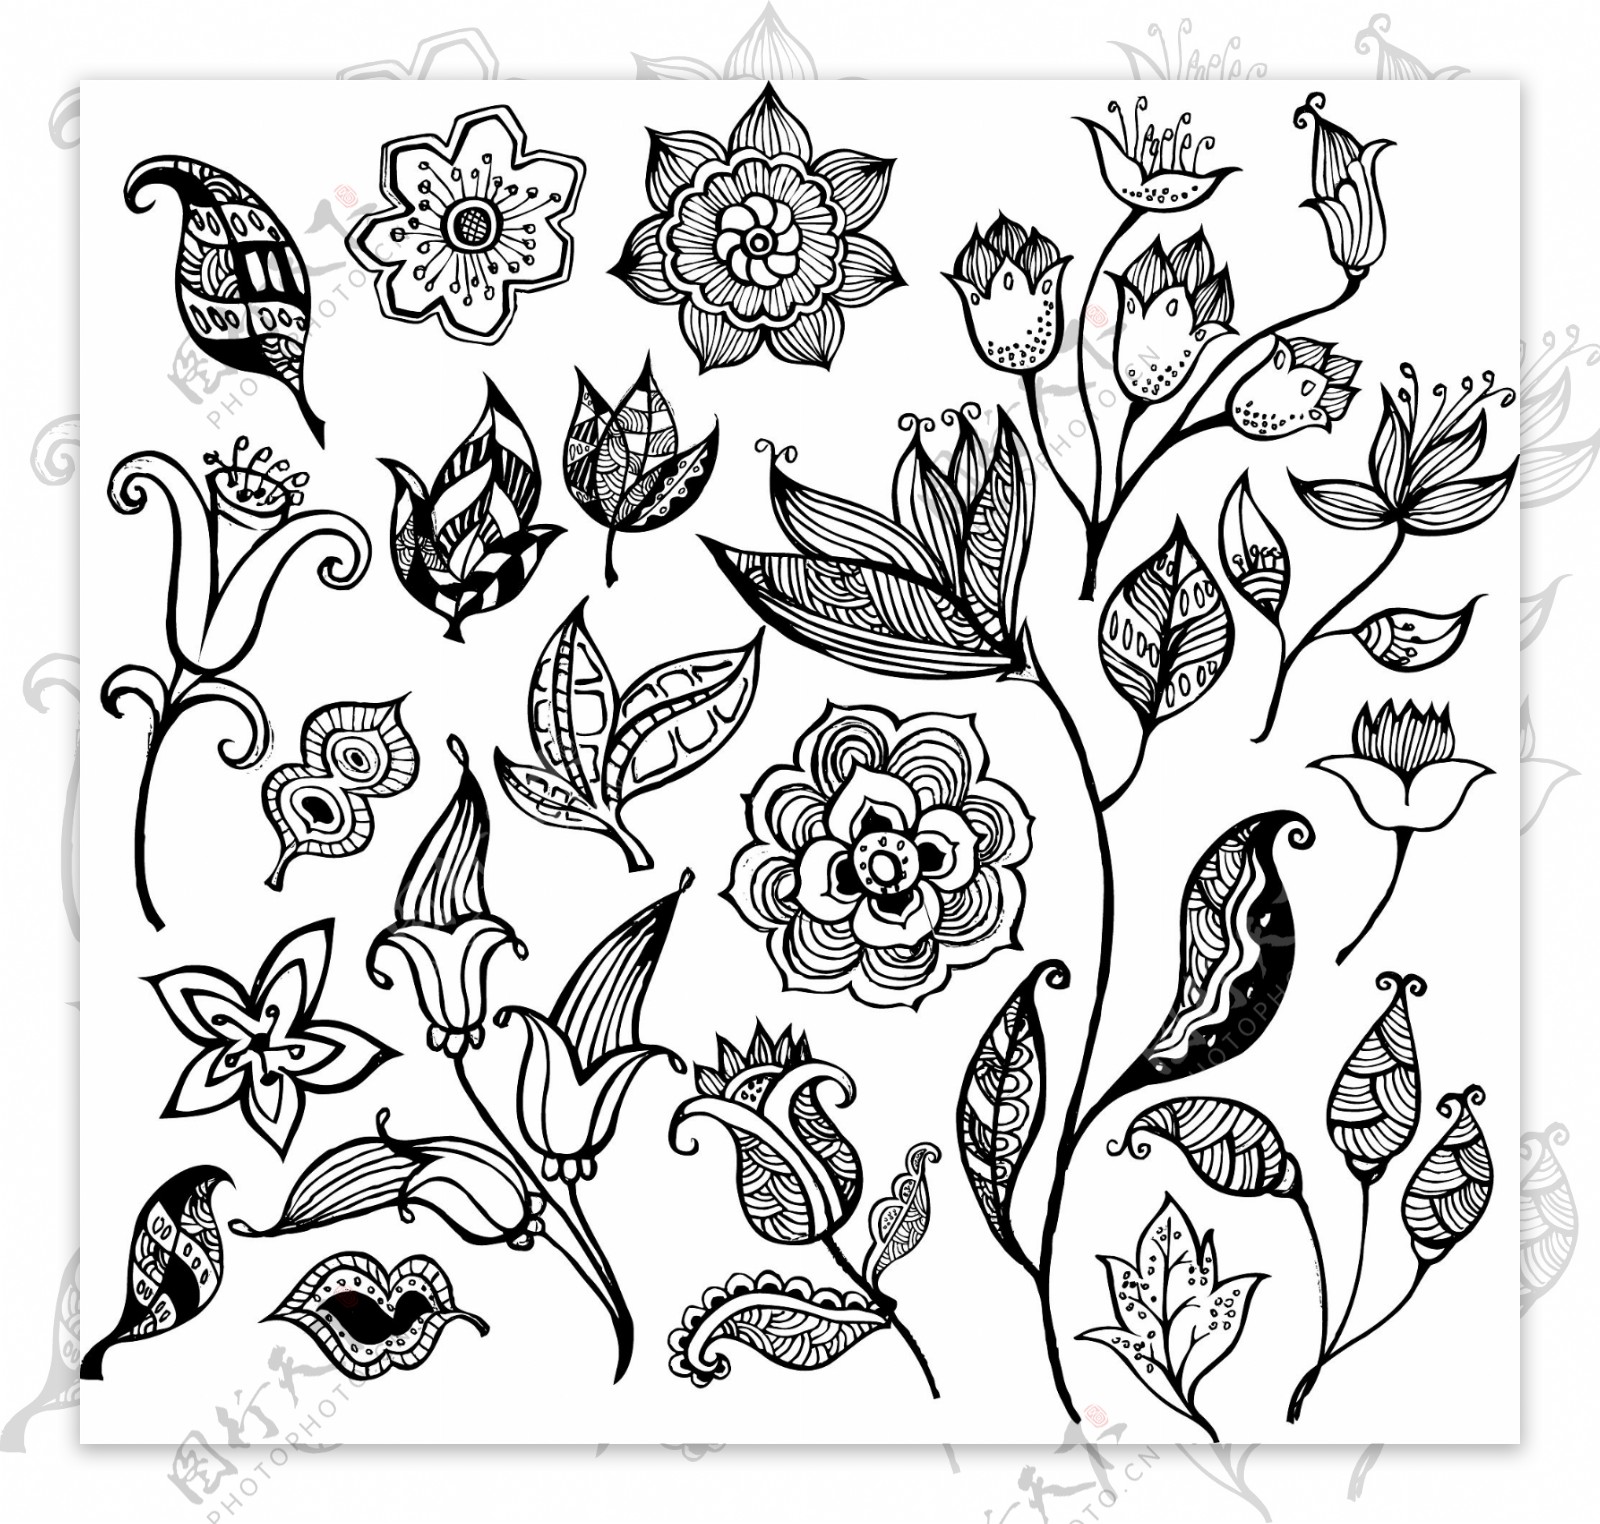 黑色和白色的花卉图案矢量素材